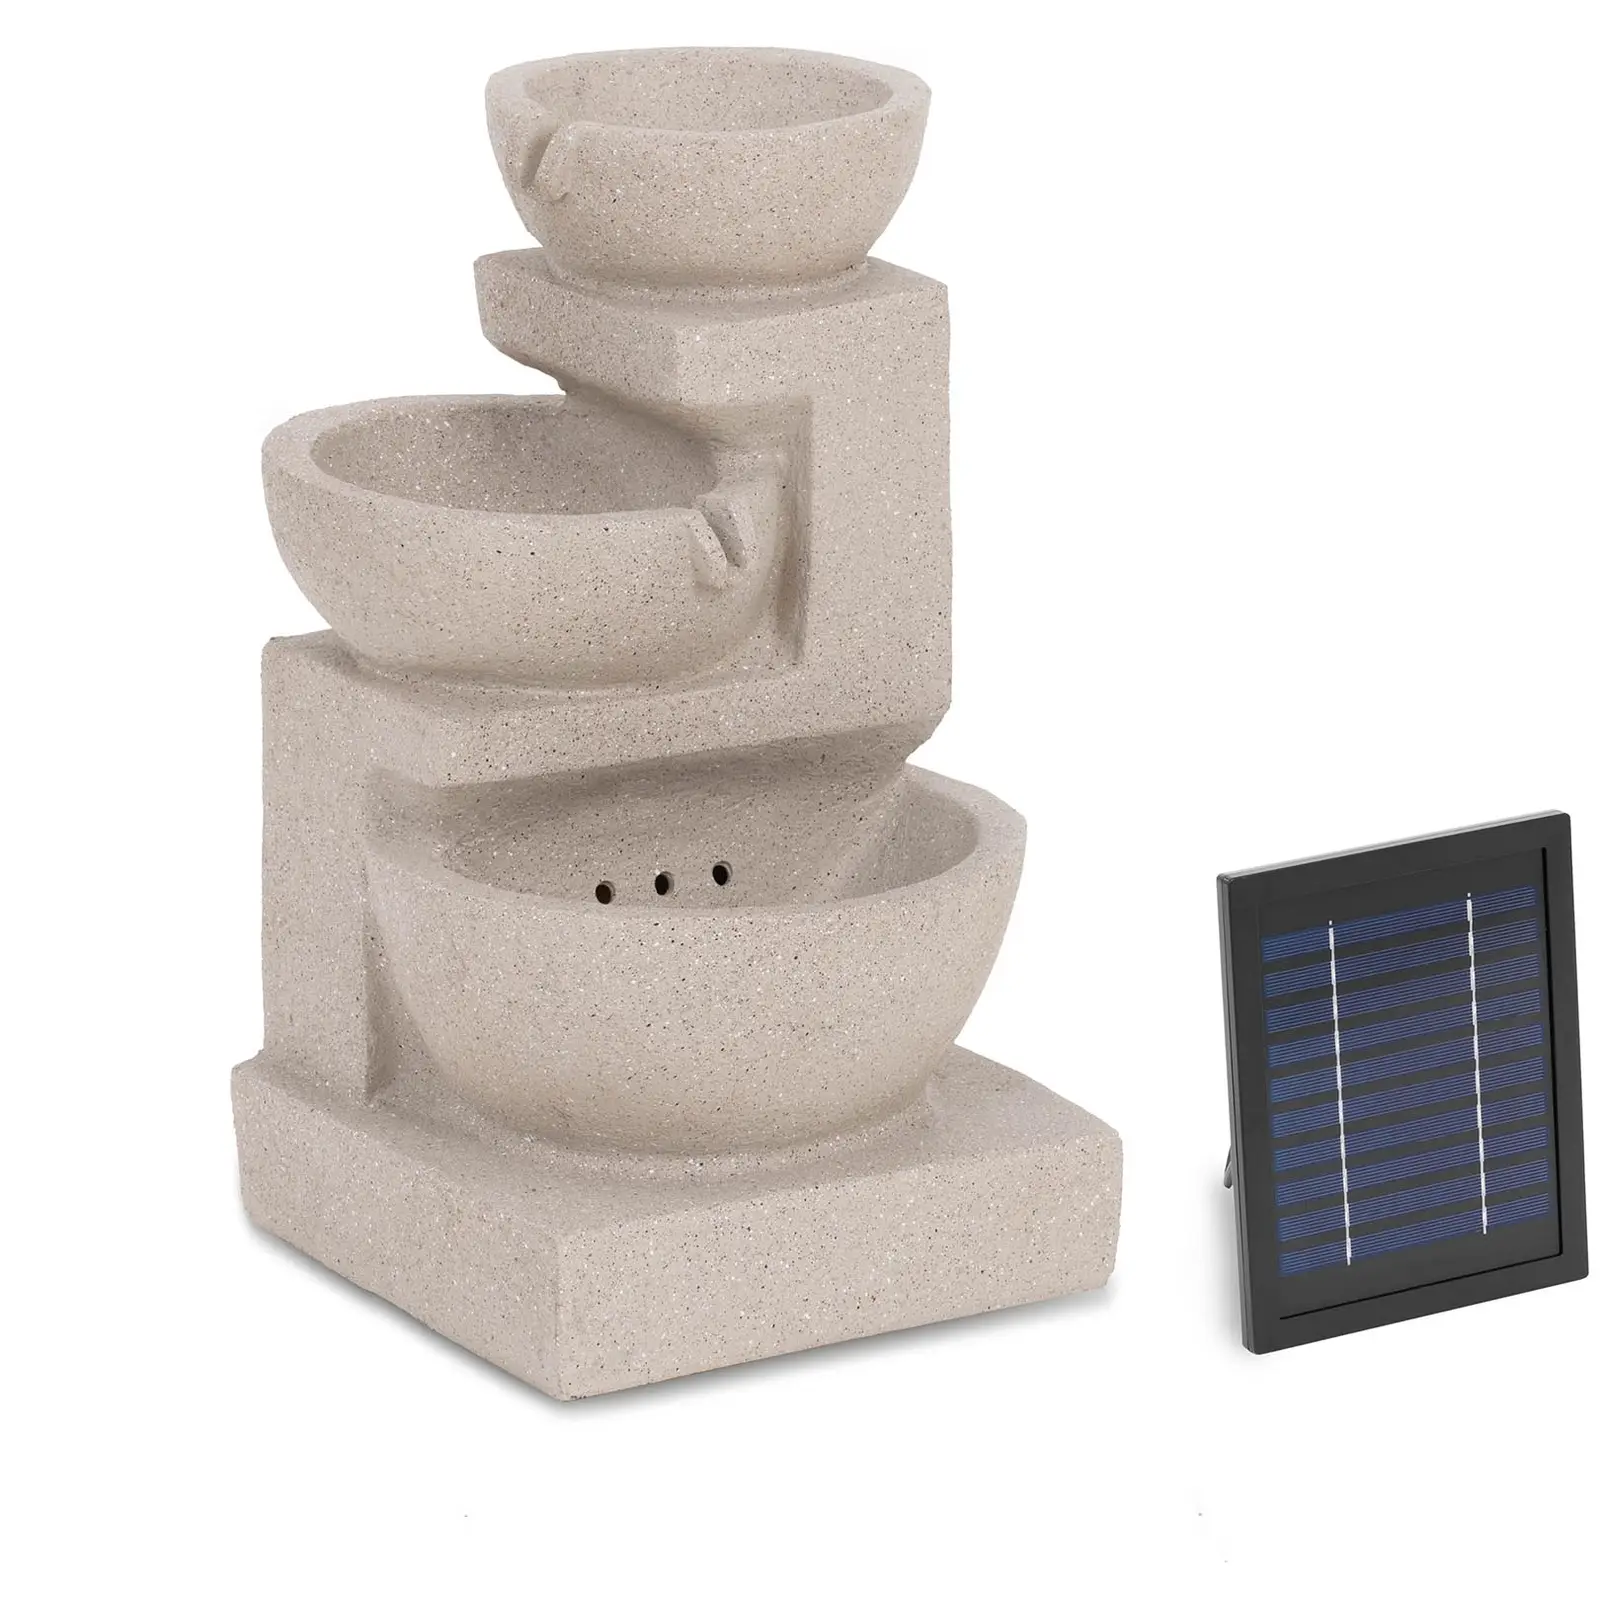 Fontana solare da giardino - 3 vasi su parete in argilla - Illuminazione a LED